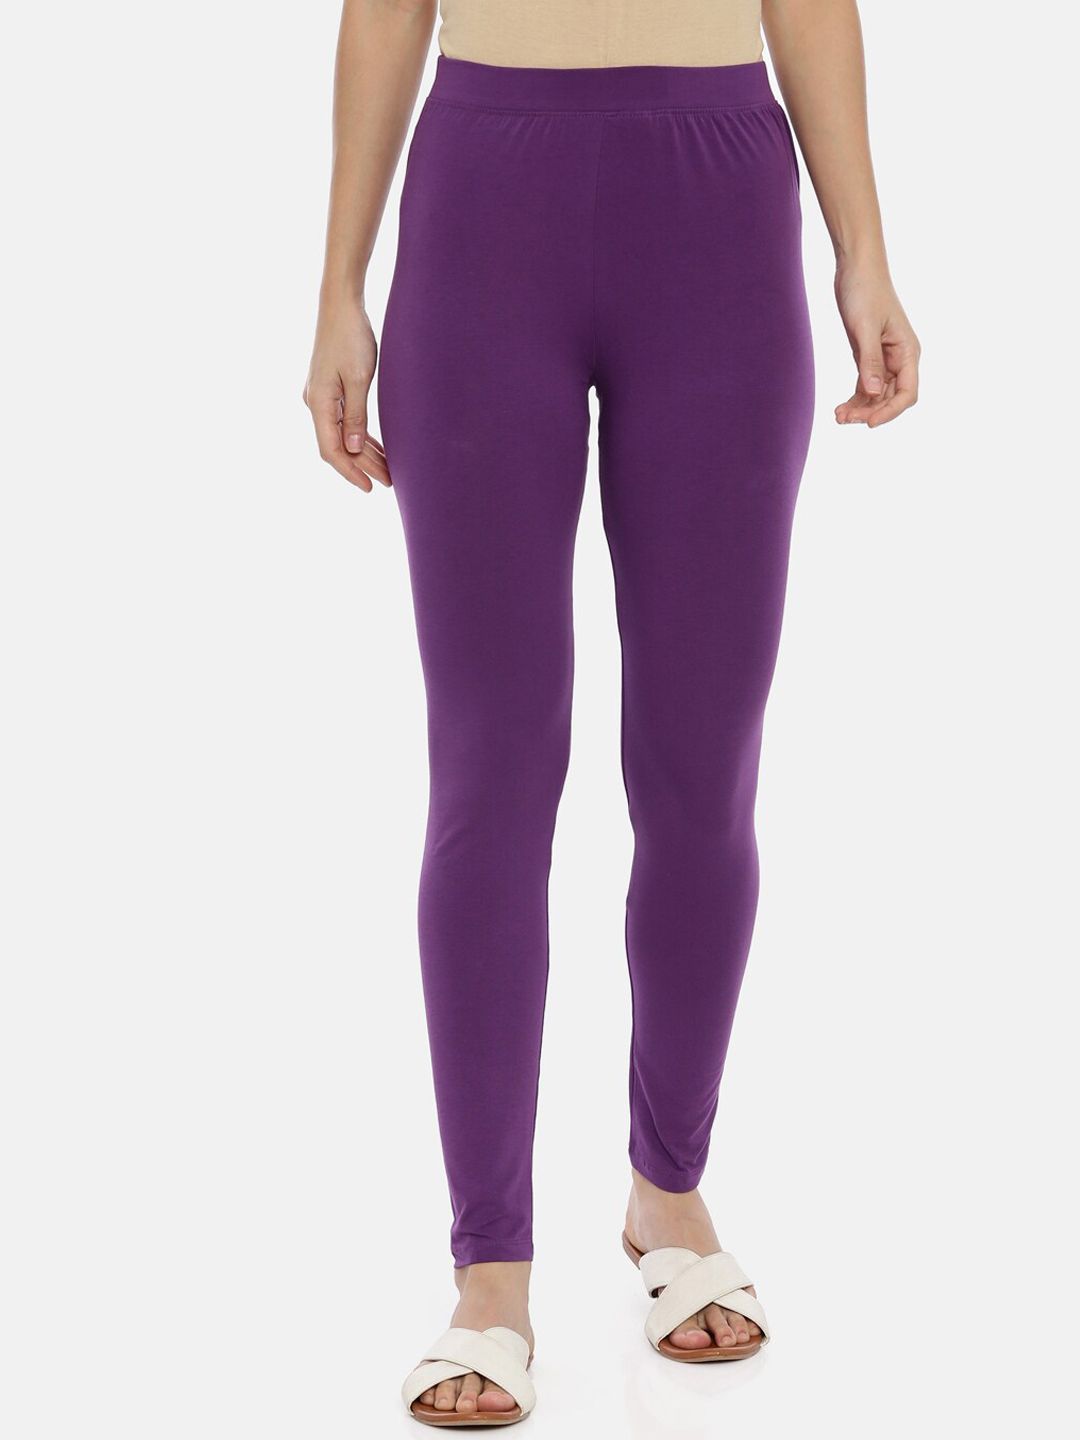 Buy Kryptic Women Purple Solid Slim fit Ankle-Length Legging